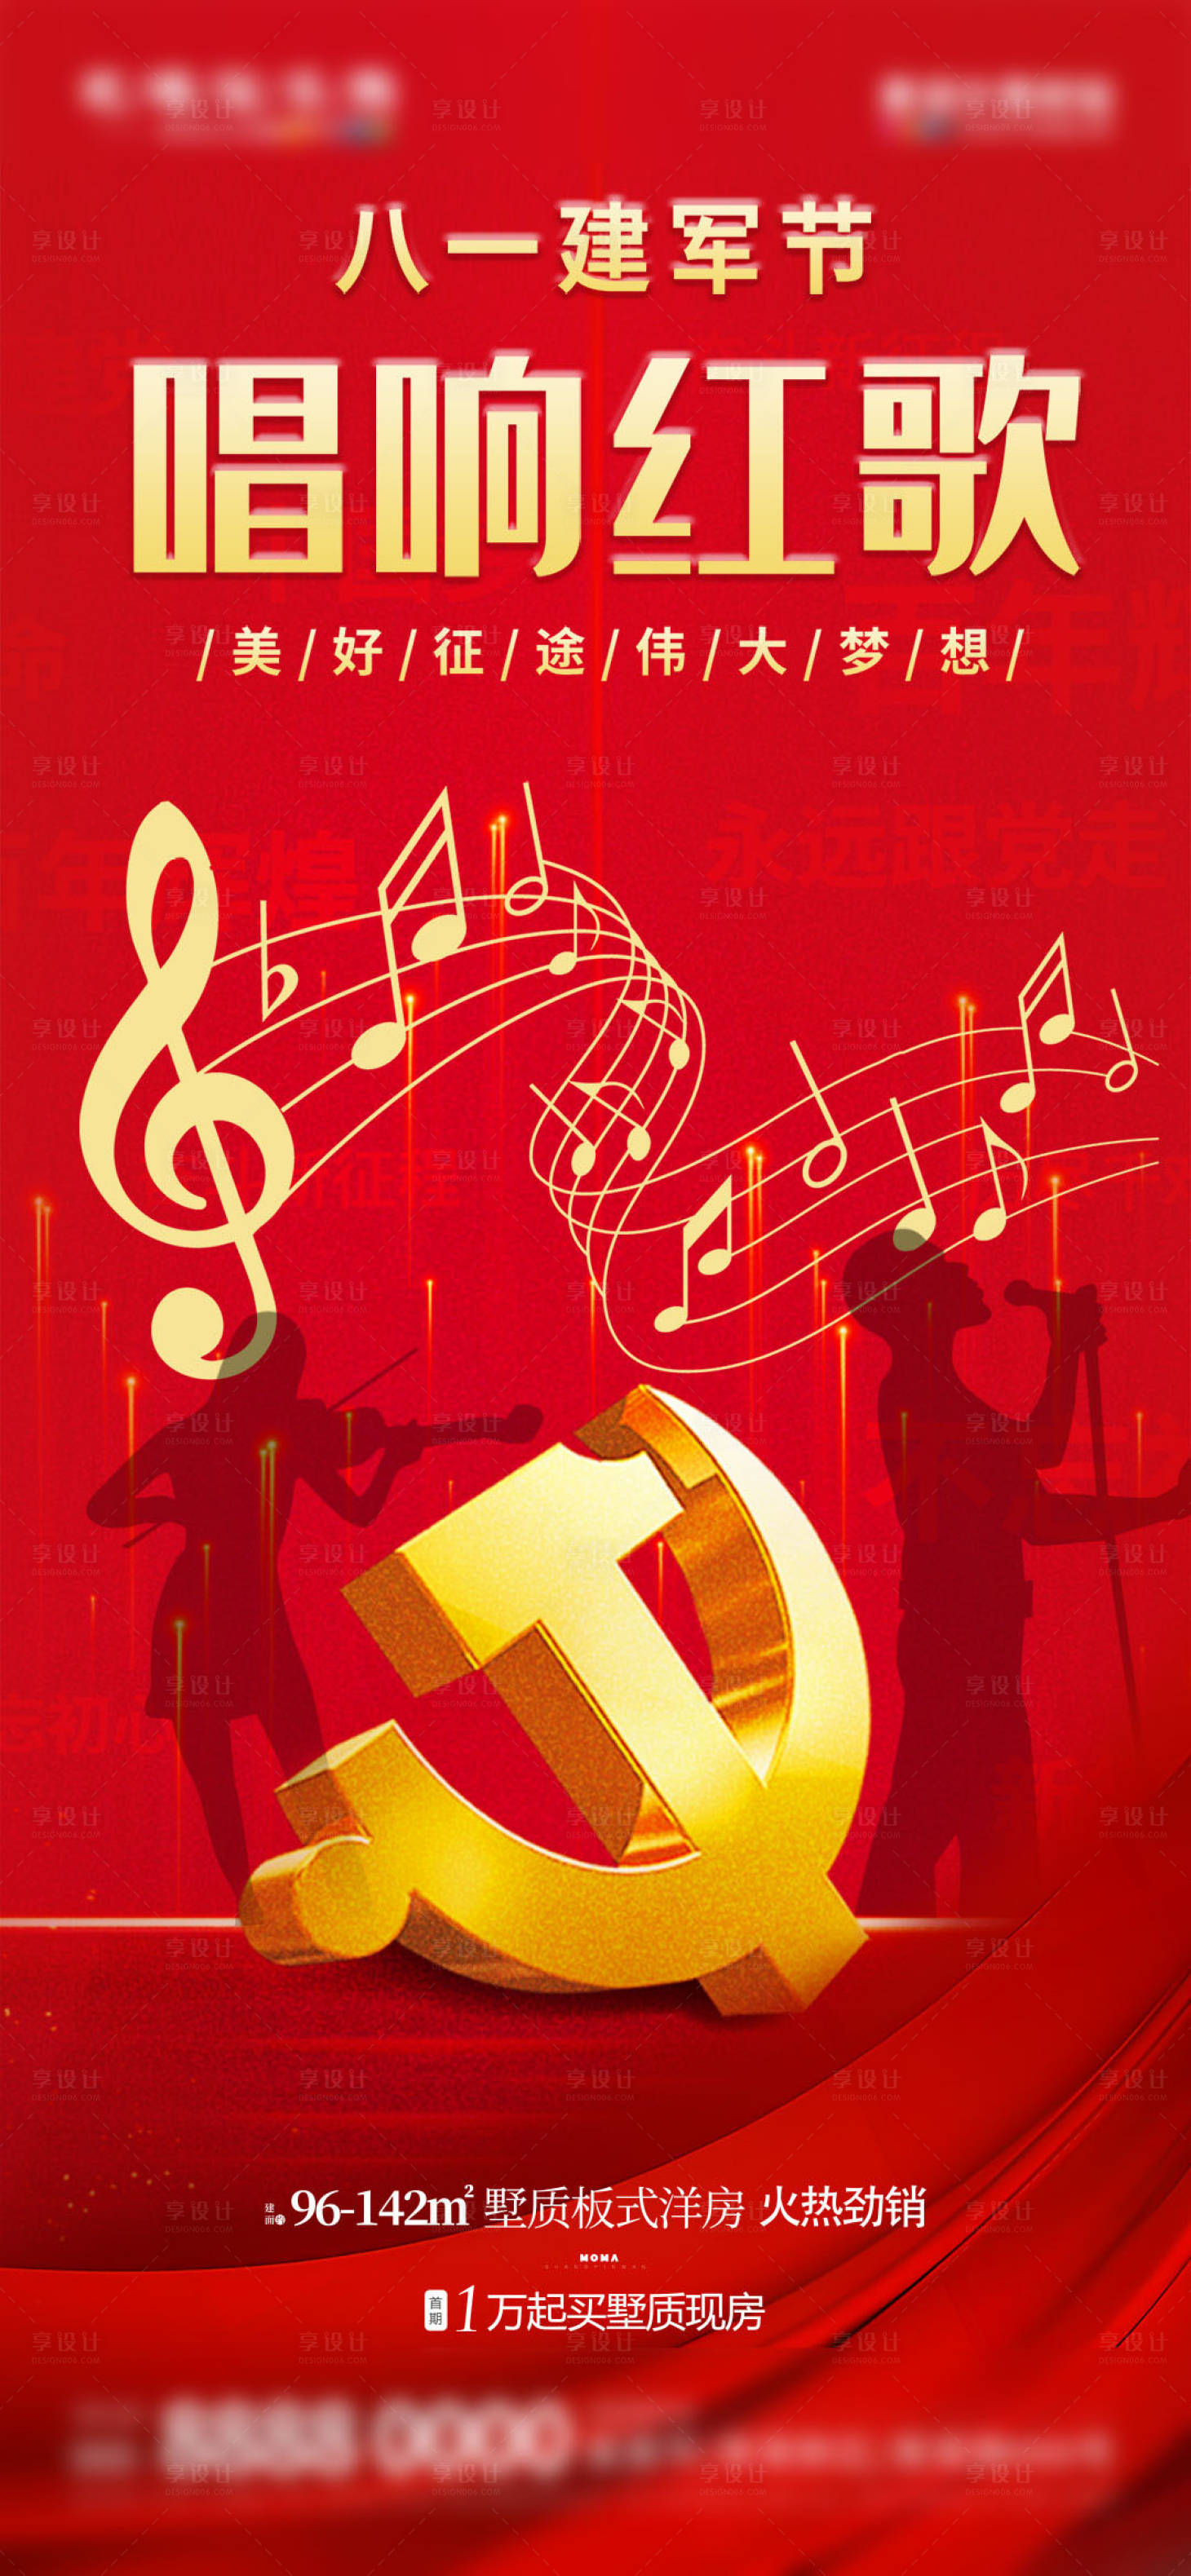 红歌经典100首—70年代经典红歌 - 中国唱片 - 专辑 - 网易云音乐